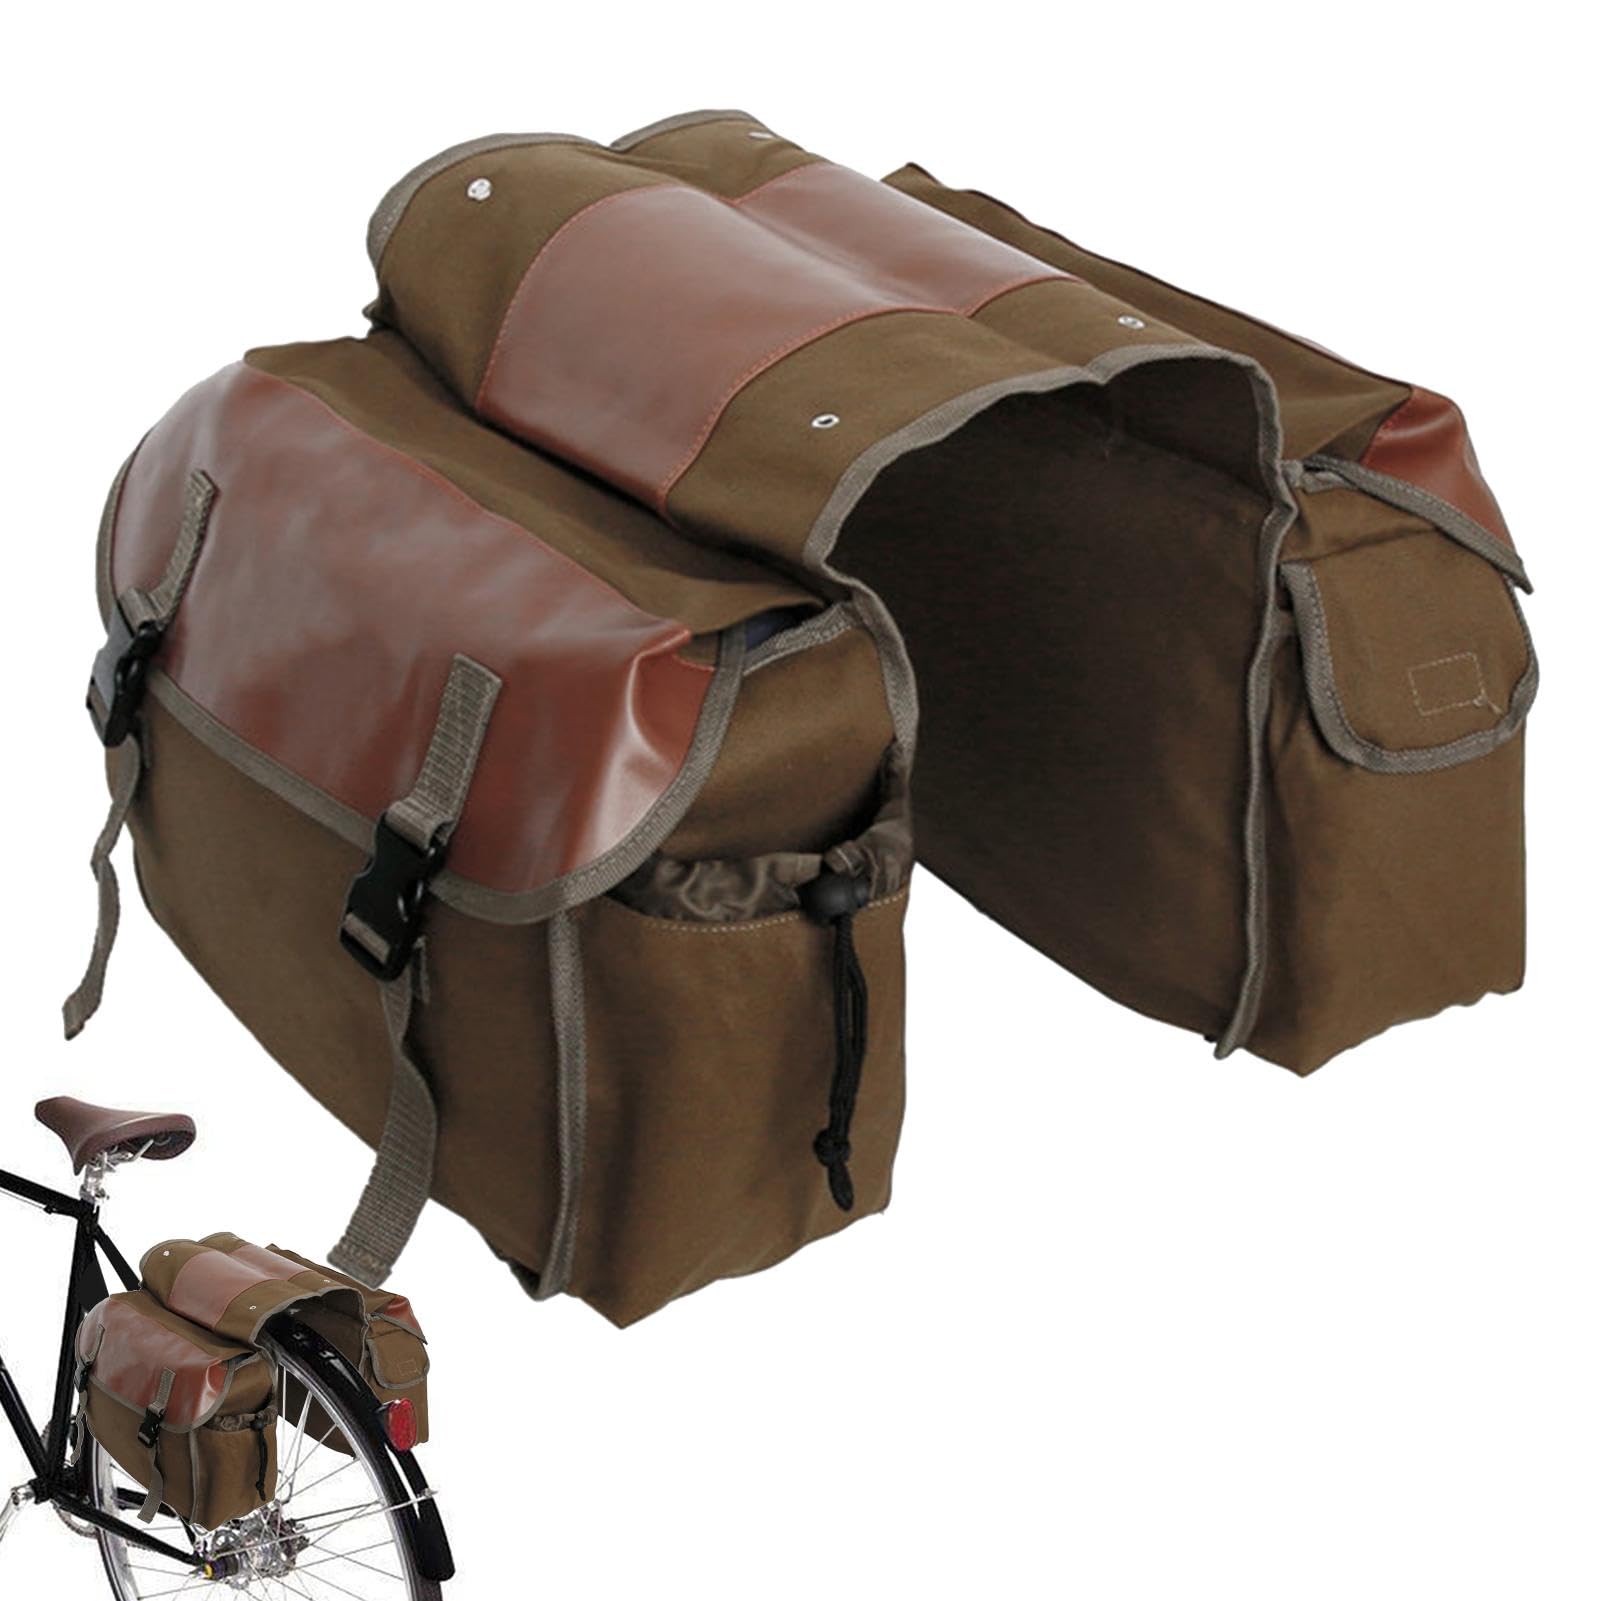 Yianyal Satteltaschen für Fahrräder – Heckträger Fahrradtasche Fahrradzubehör – Fahrräder Sitzpackungen, geräumige Rennradtasche, Sitztasche, Sattelwerkzeugaufbewahrung für Mountainbikes, Rennräder, von Yianyal